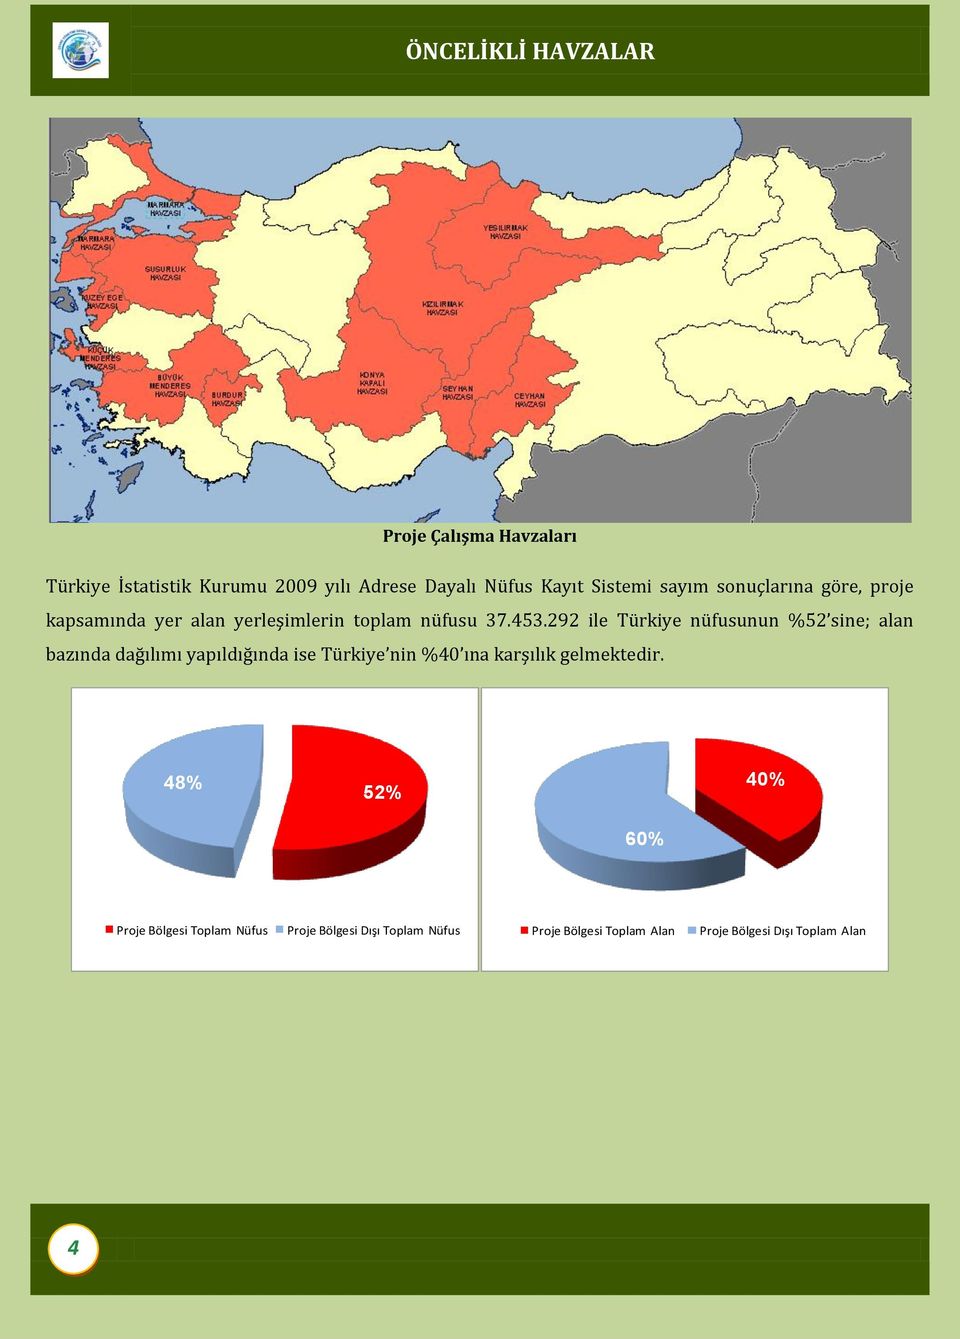 292 ile Türkiye nüfusunun %52 sine; alan bazında dağılımı yapıldığında ise Türkiye nin %40 ına karşılık